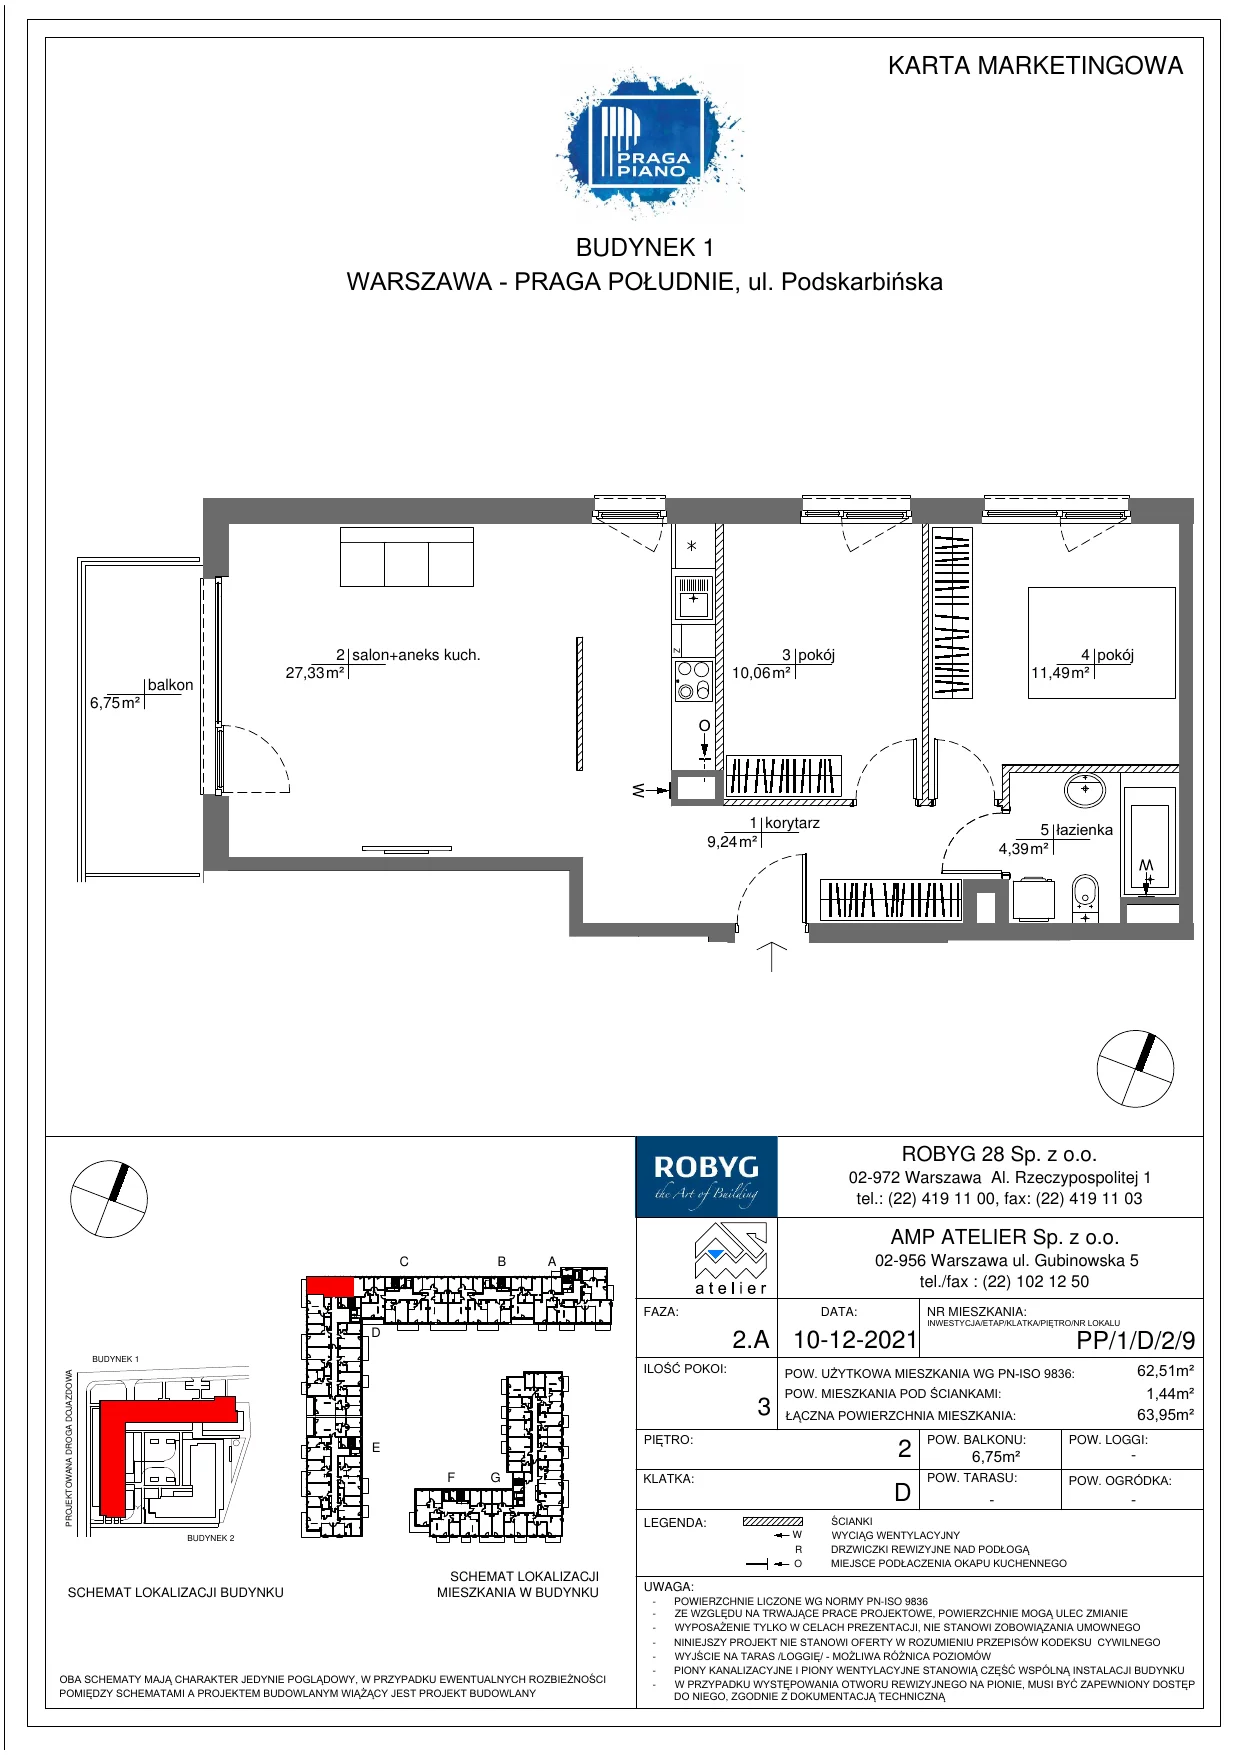 Mieszkanie 62,51 m², piętro 2, oferta nr PP/1/D/2/9, Praga Piano, Warszawa, Praga Południe, Kamionek, ul. Podskarbińska